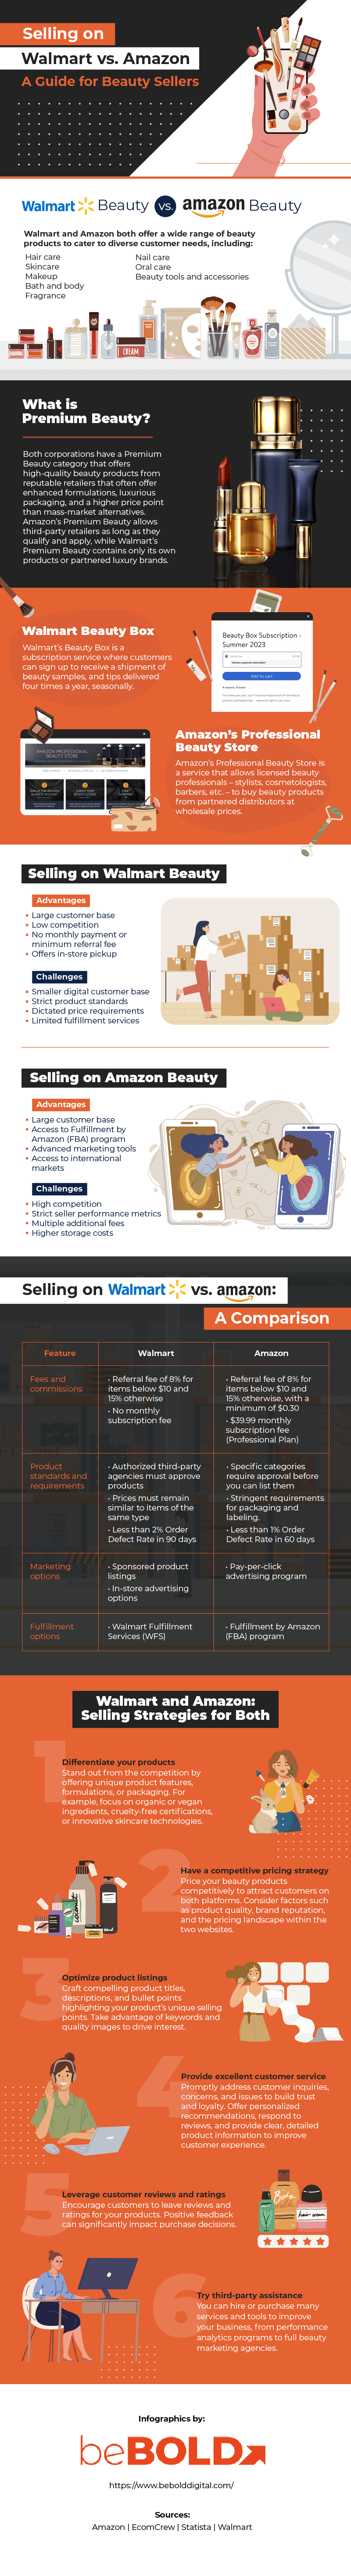 Selling on Walmart vs. Amazon